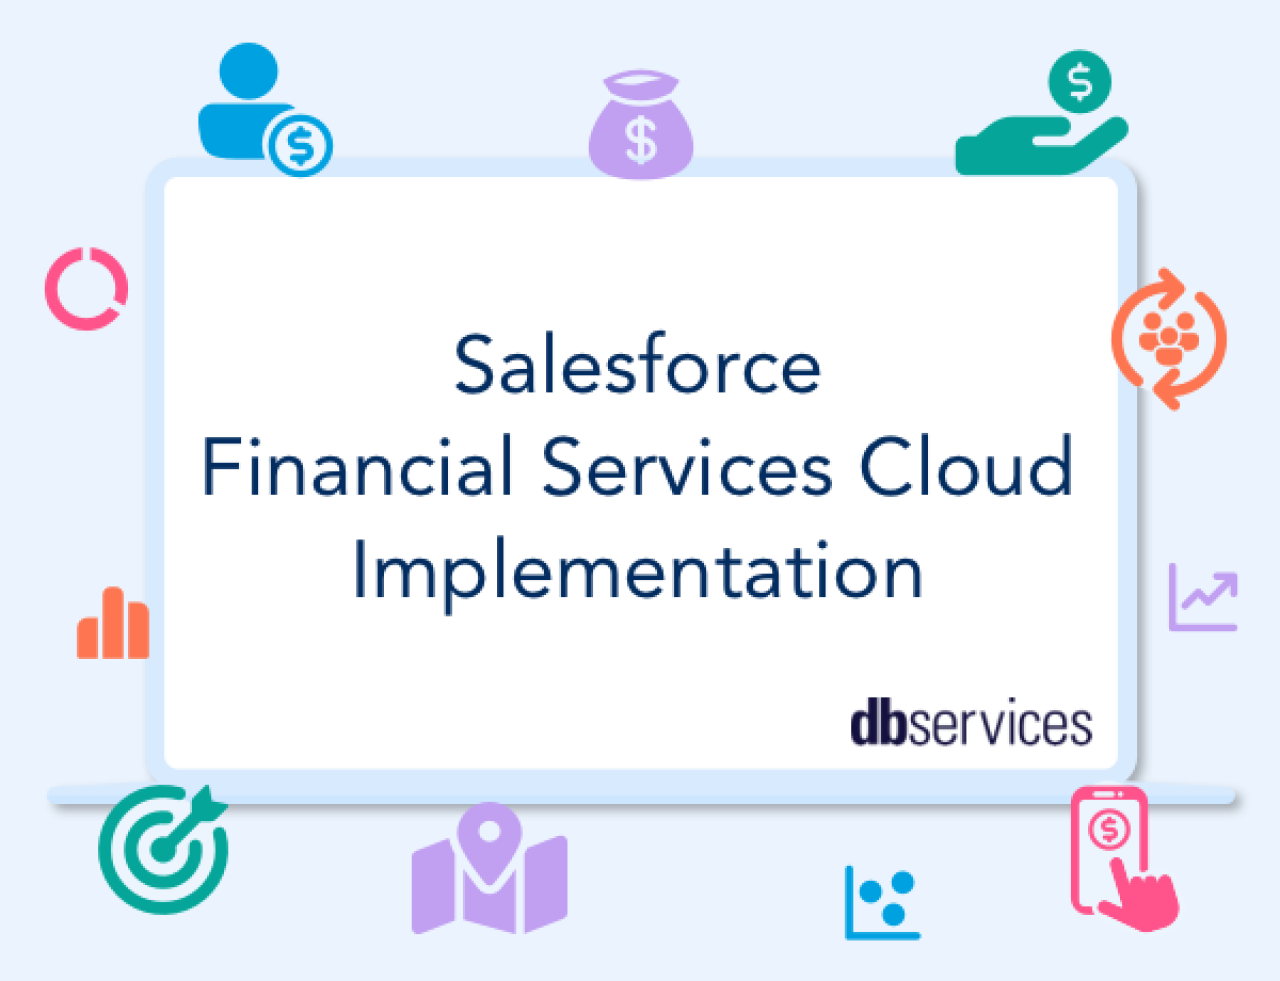 salesforce financial services cloud implementation.